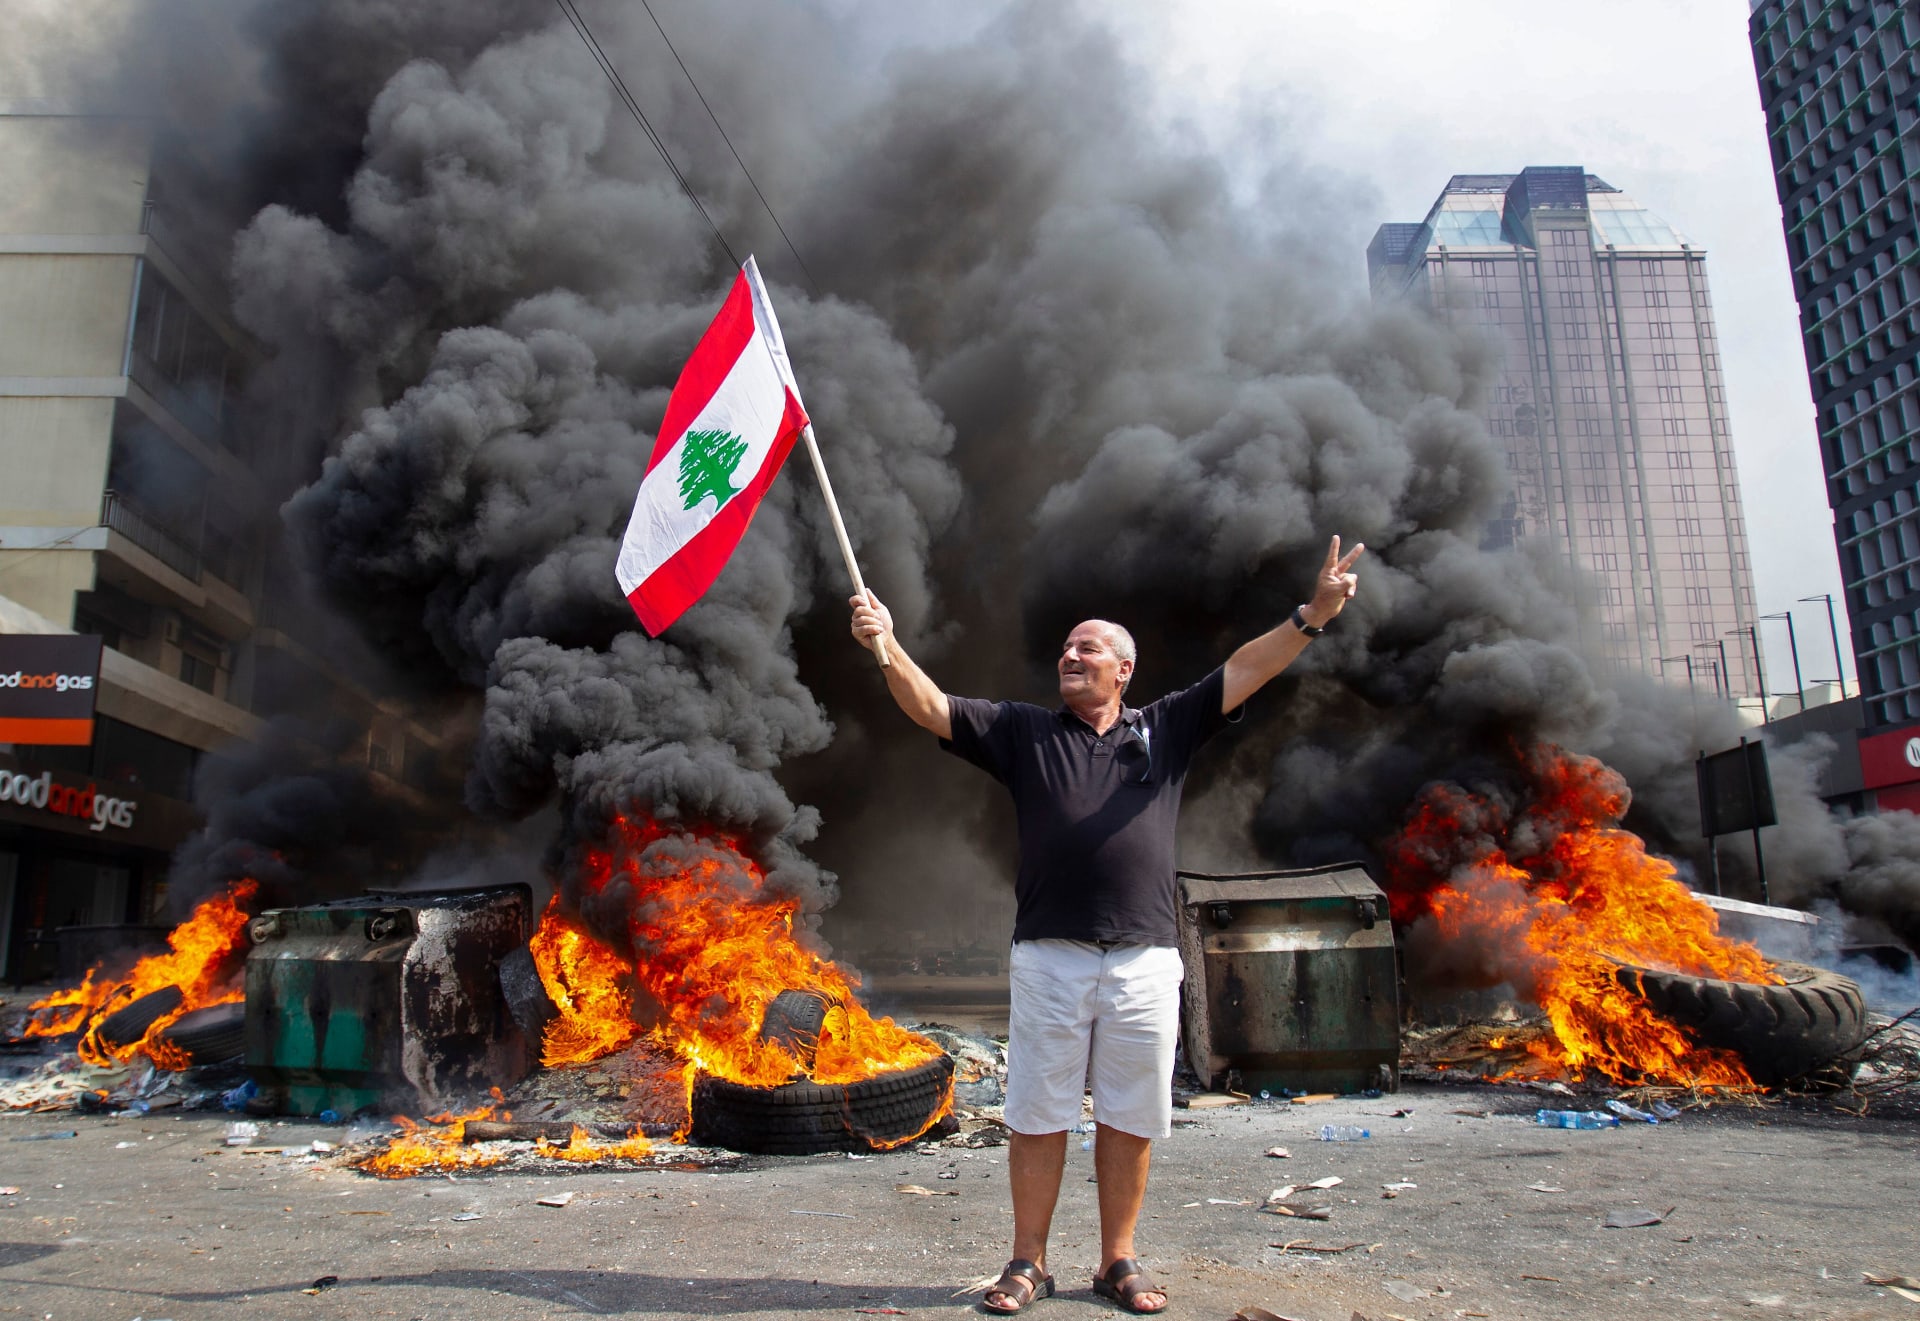 بالصور.. الآلاف في مظاهرات تطالب بـ"إسقاط النظام" في لبنان 